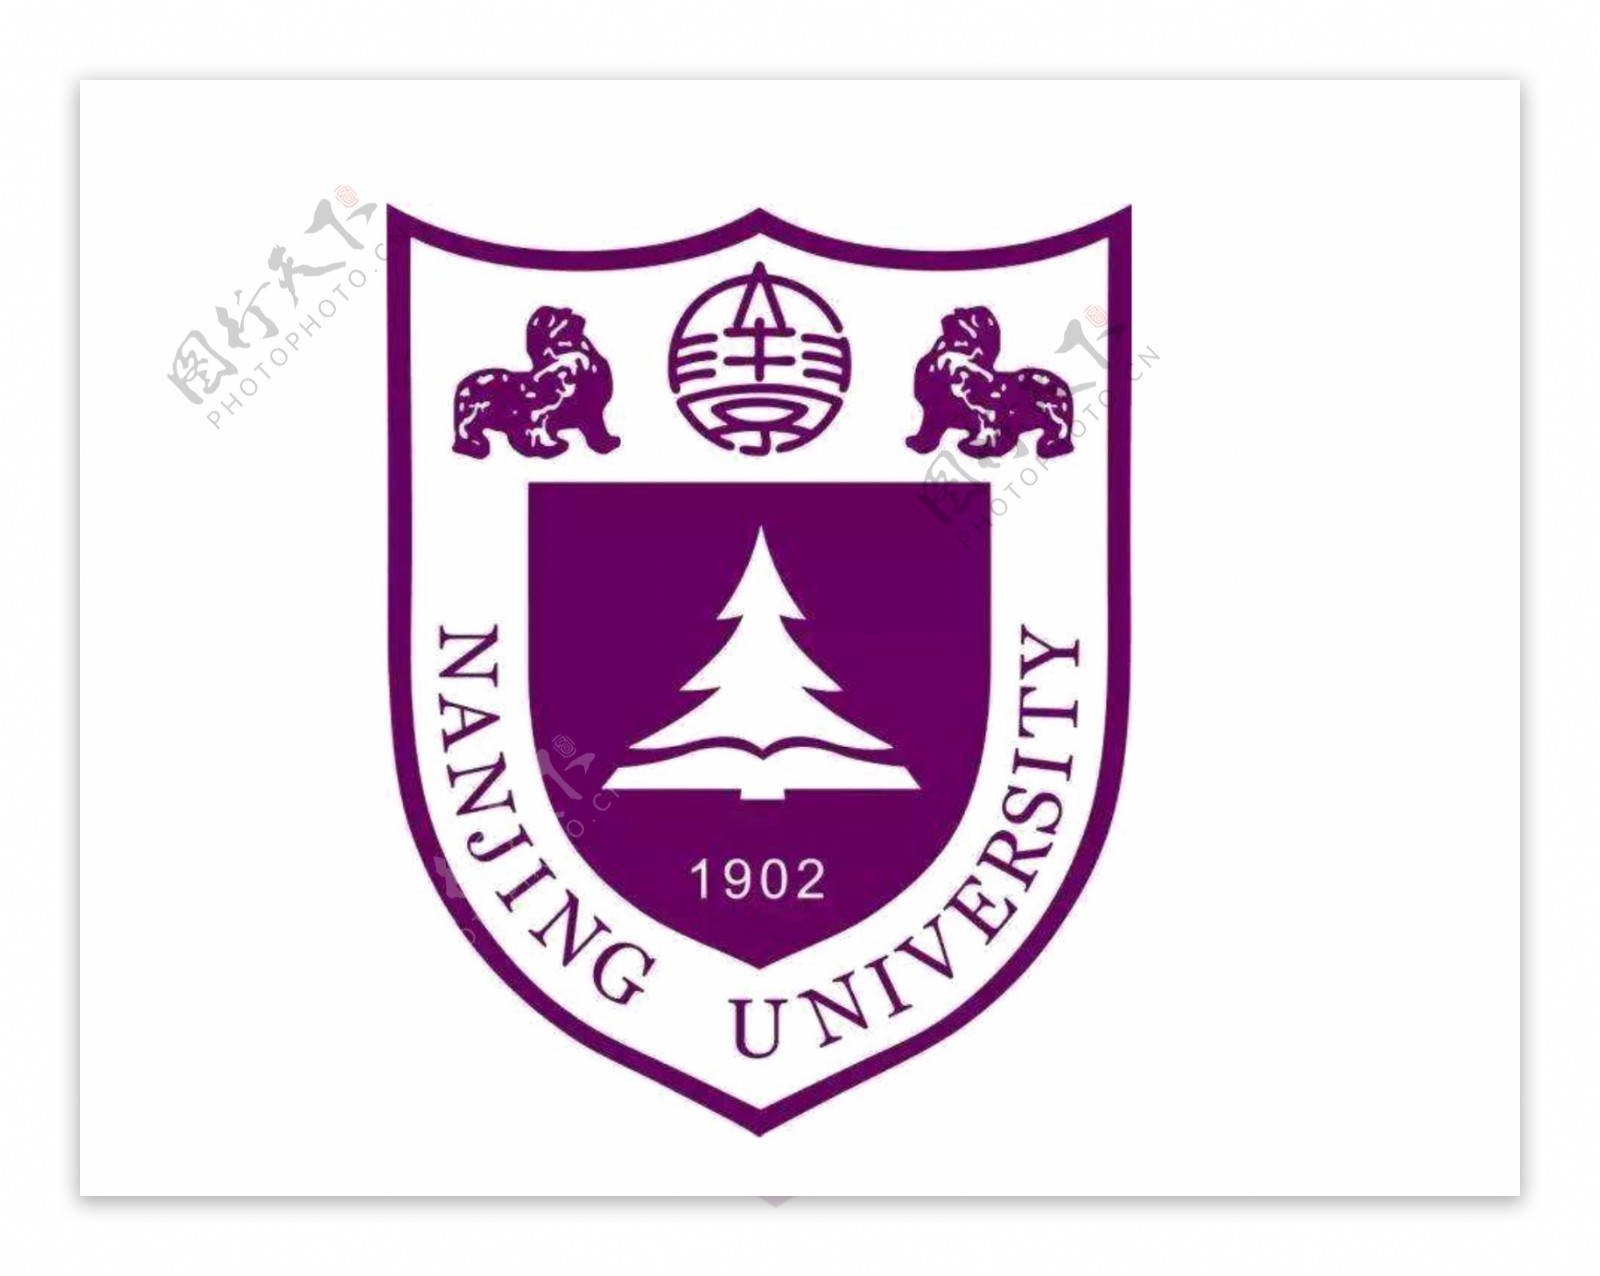 南京大学校徽logo